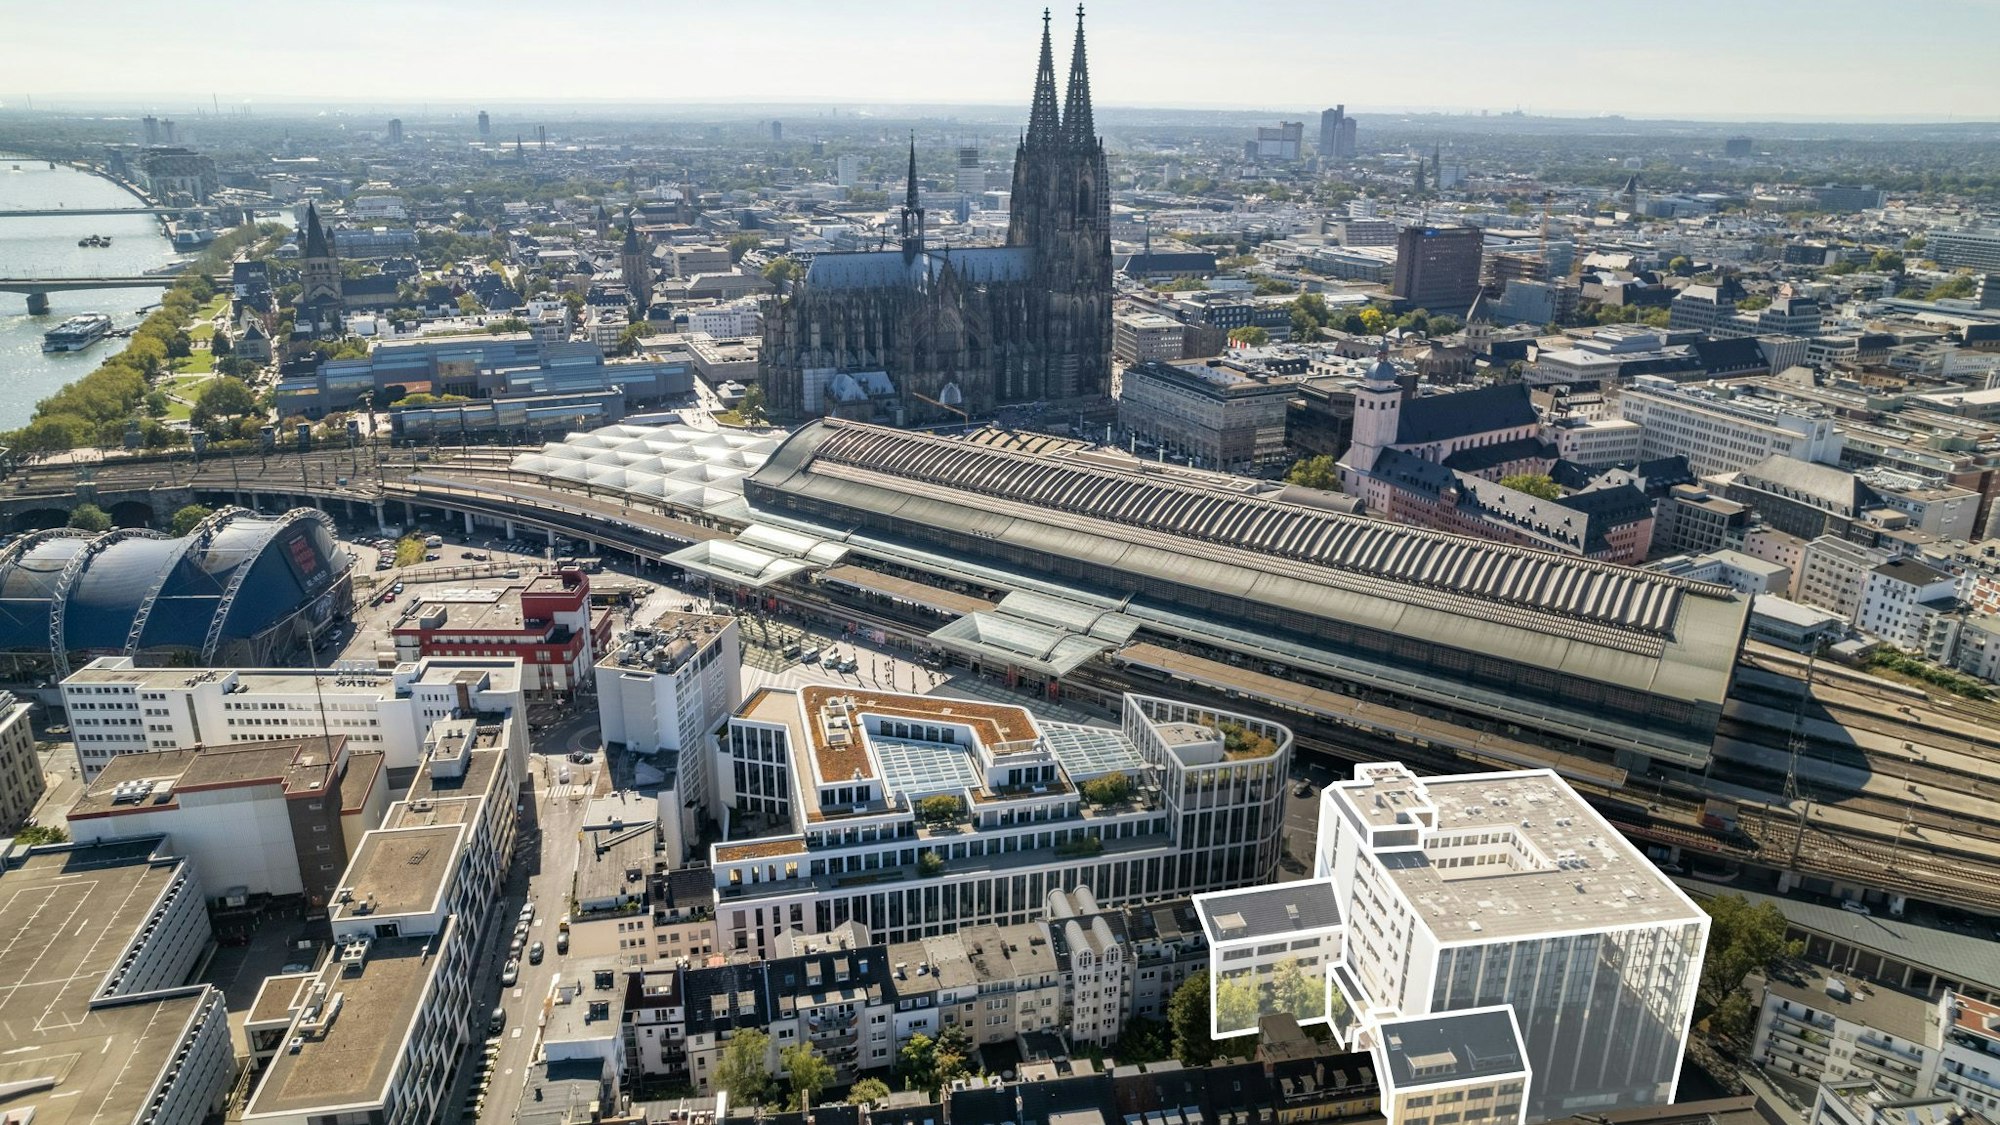 Blick auf den Kölner Dom, den Hauptbahnhof und die jetzige RWZ-Zentrale (weiß eingerahmt).